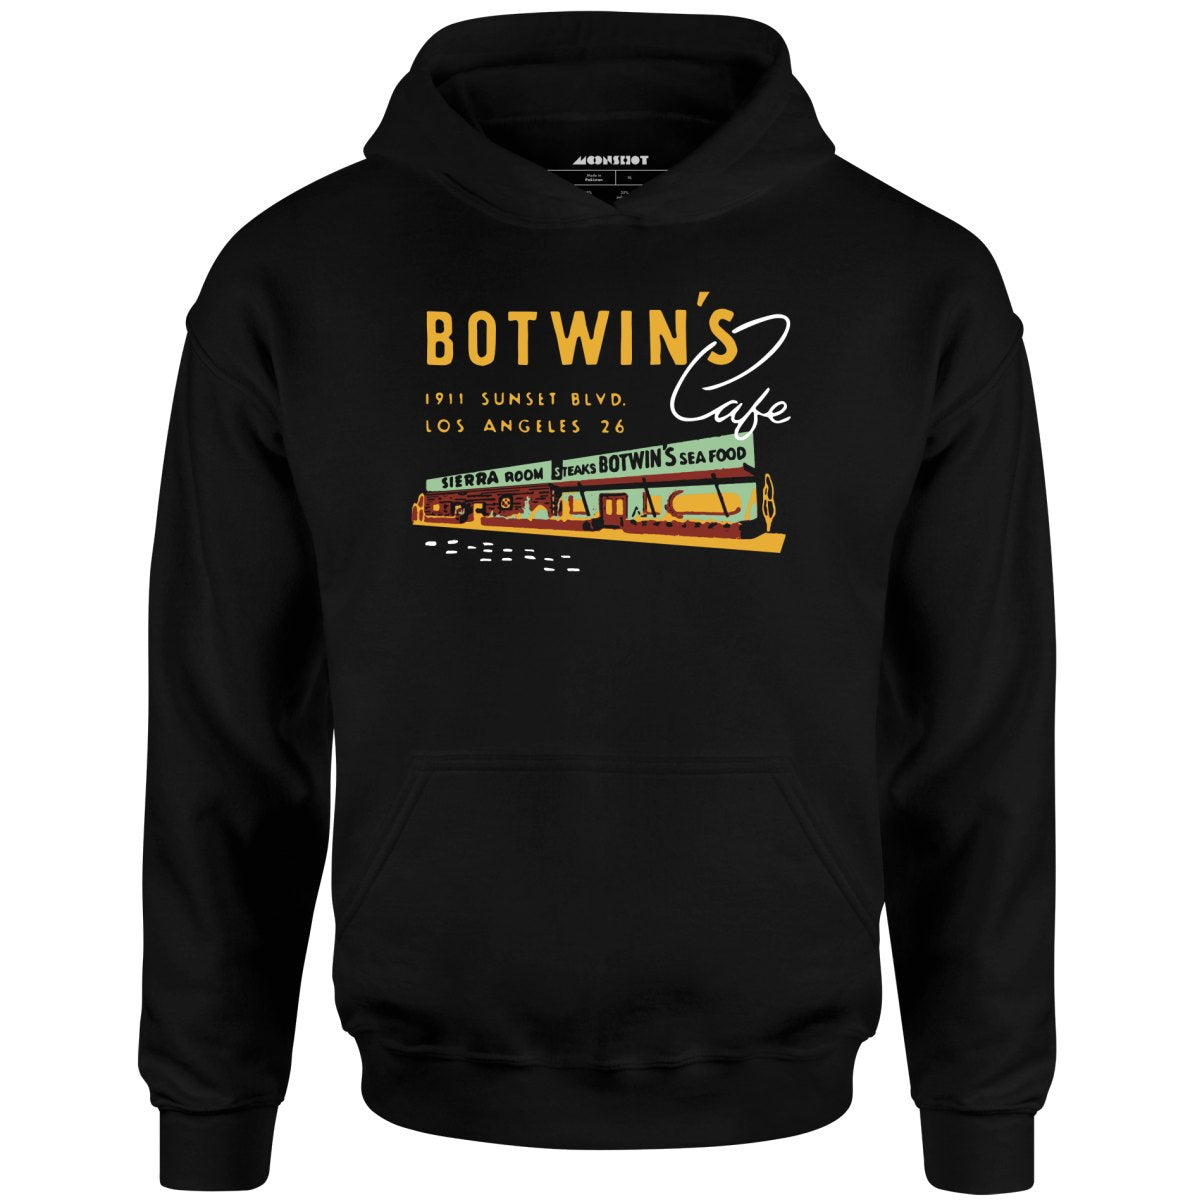 Botwin's Cafe - Los Angeles, CA - Vintage Restaurant - Unisex Hoodie